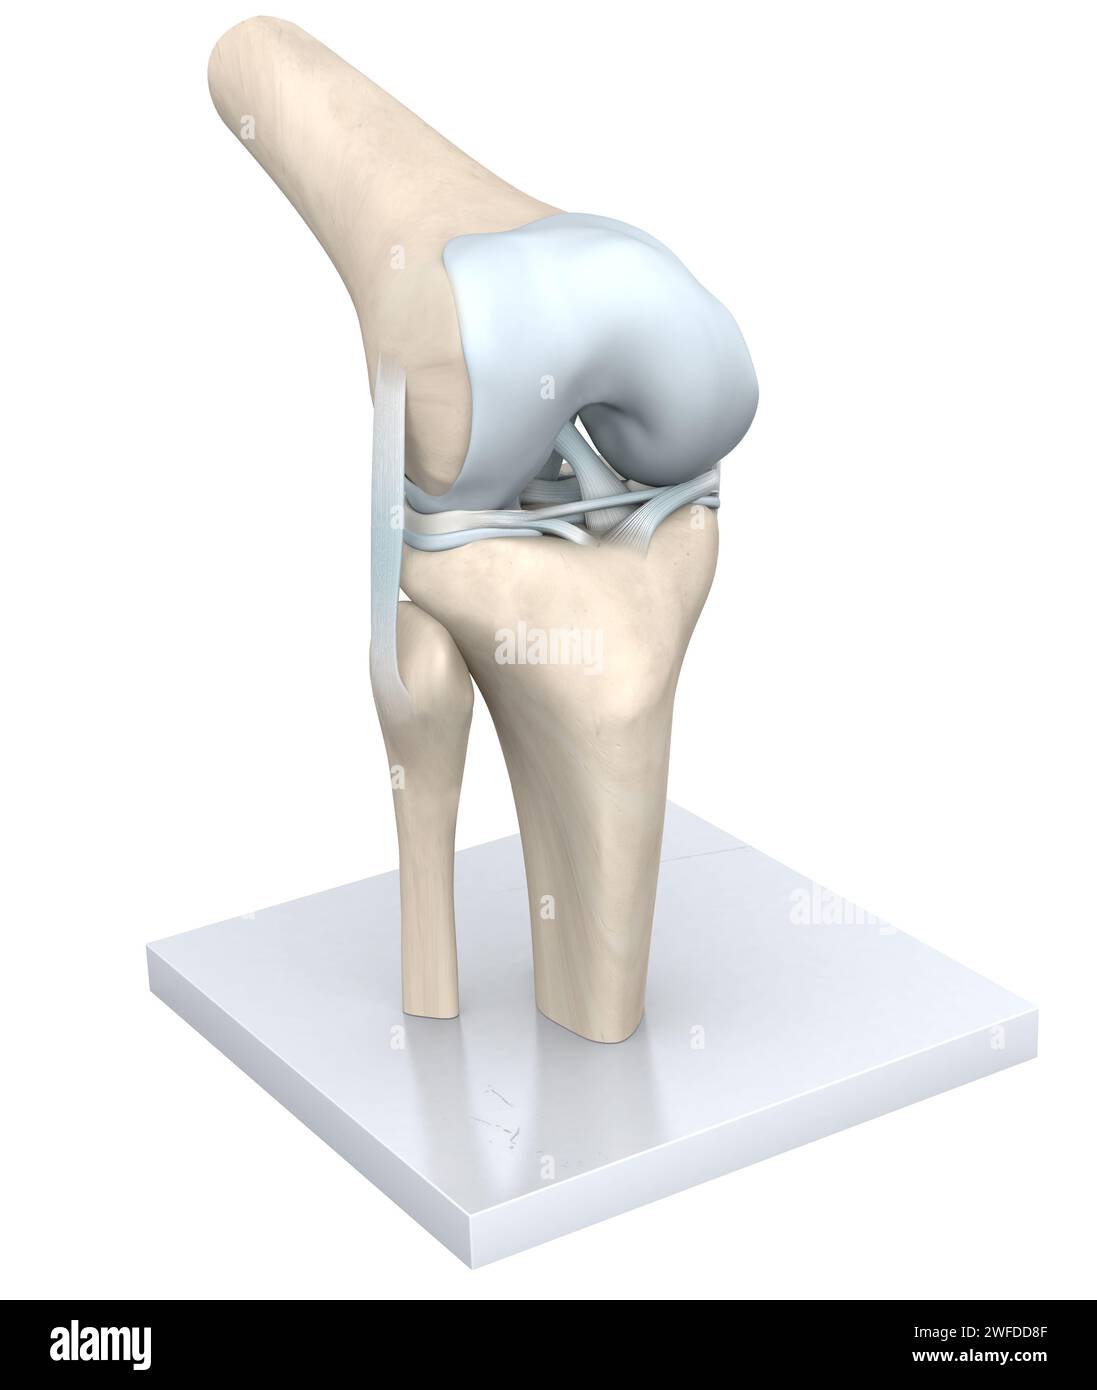 Das Kniegelenk, eine komplexe Scharnierstruktur, verbindet den Oberschenkelknochen (Femur) mit dem Schienbeinknochen (Tibia), das durch Knorpel gepolstert wird, wodurch Beugung und Dehnung ermöglicht werden Stockfoto